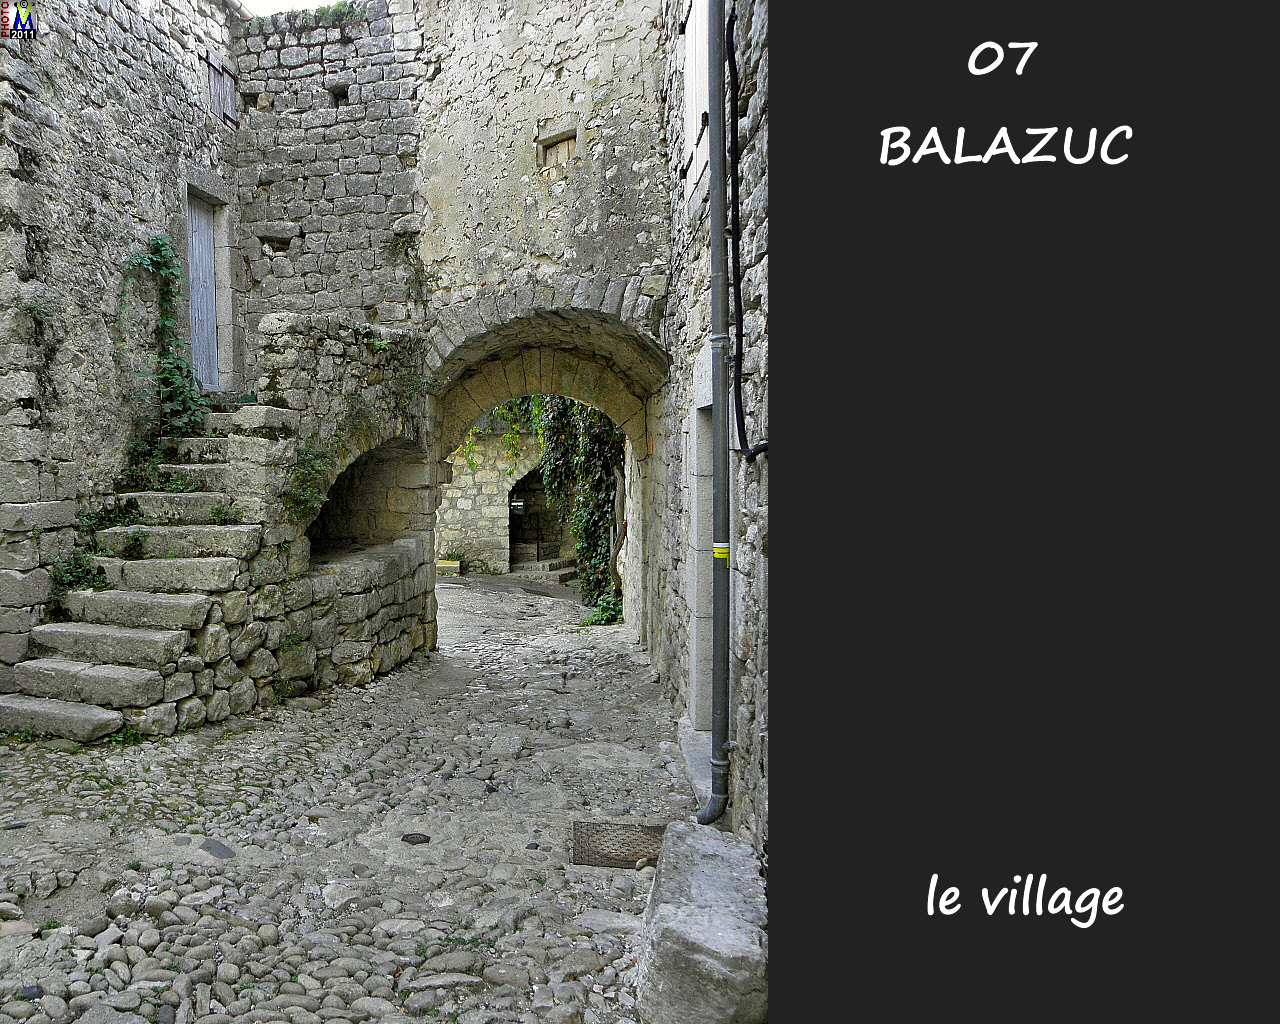 07BALAZUC_village_126.jpg